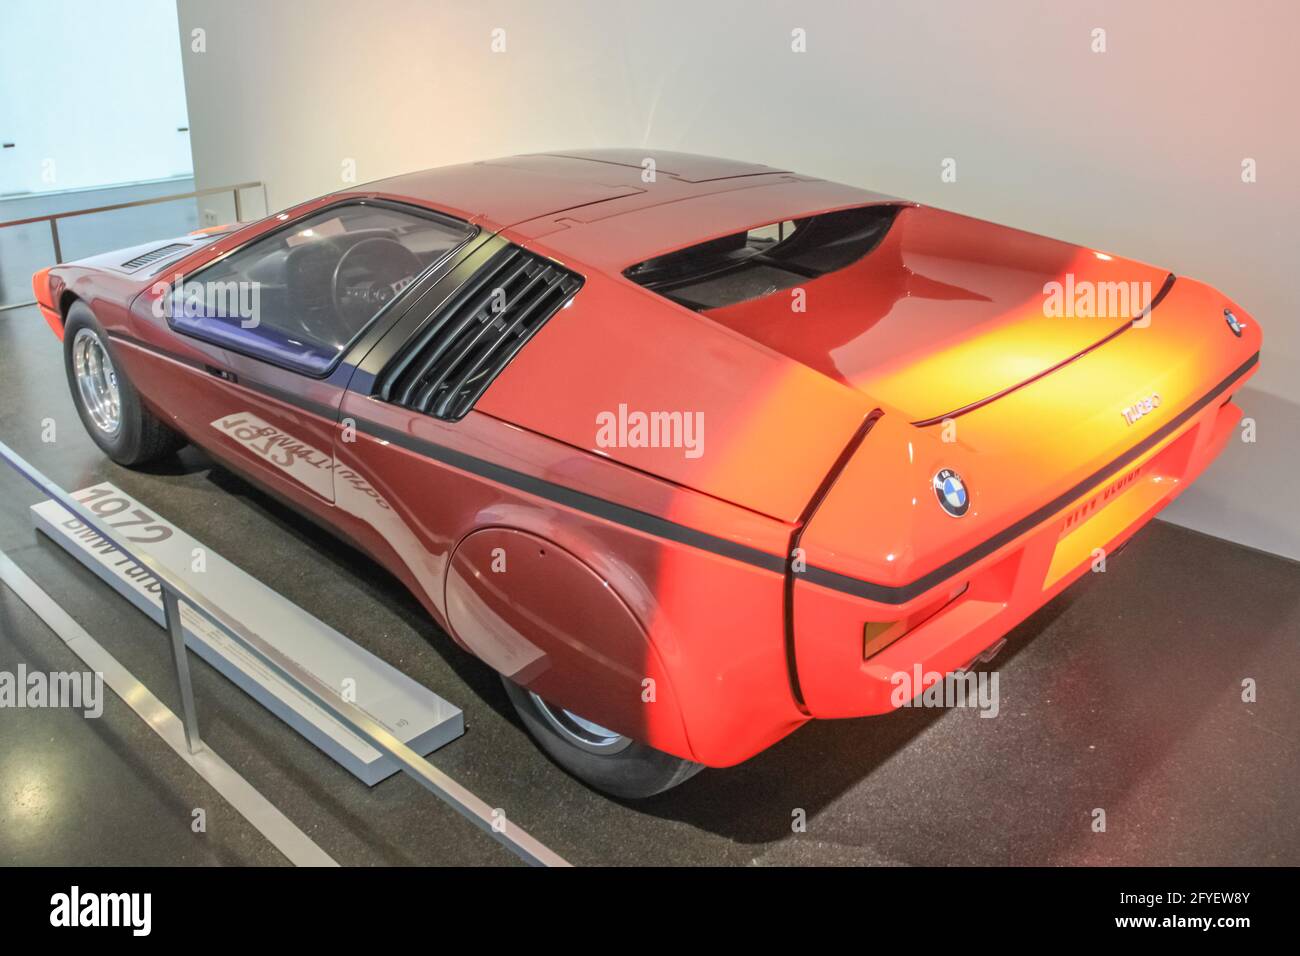 Germania, Monaco di Baviera - 27 aprile 2011: Concept car BMW Turbo dal 1972 nella sala espositiva del Museo BMW. La prima concept car dell'azienda Foto Stock